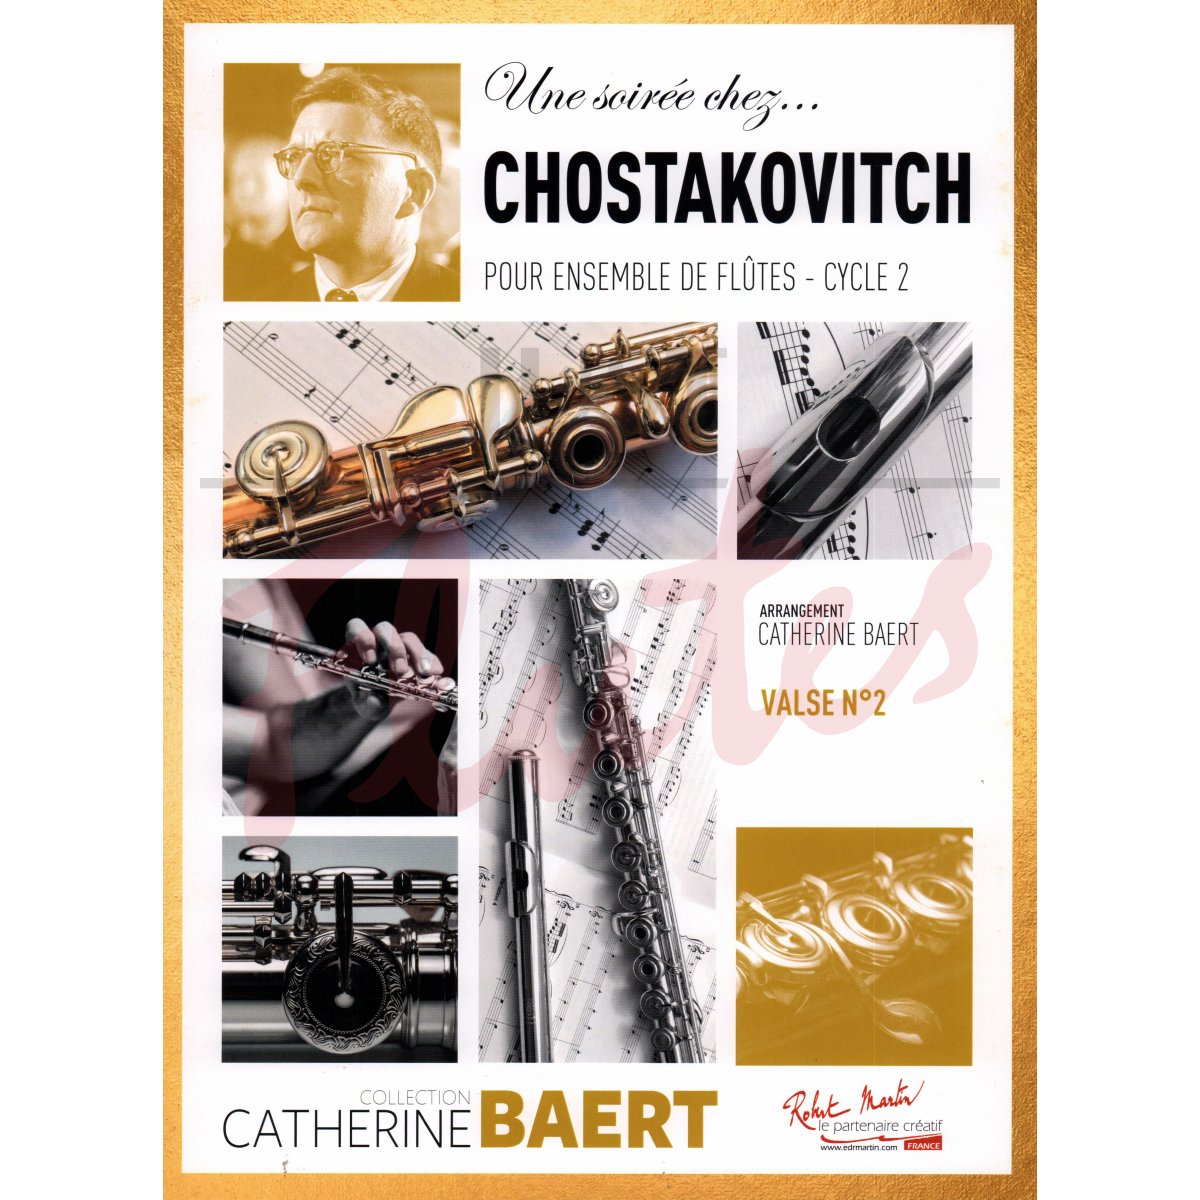 An Evening with Shostakovich: Valse No 2 for Flute Choir